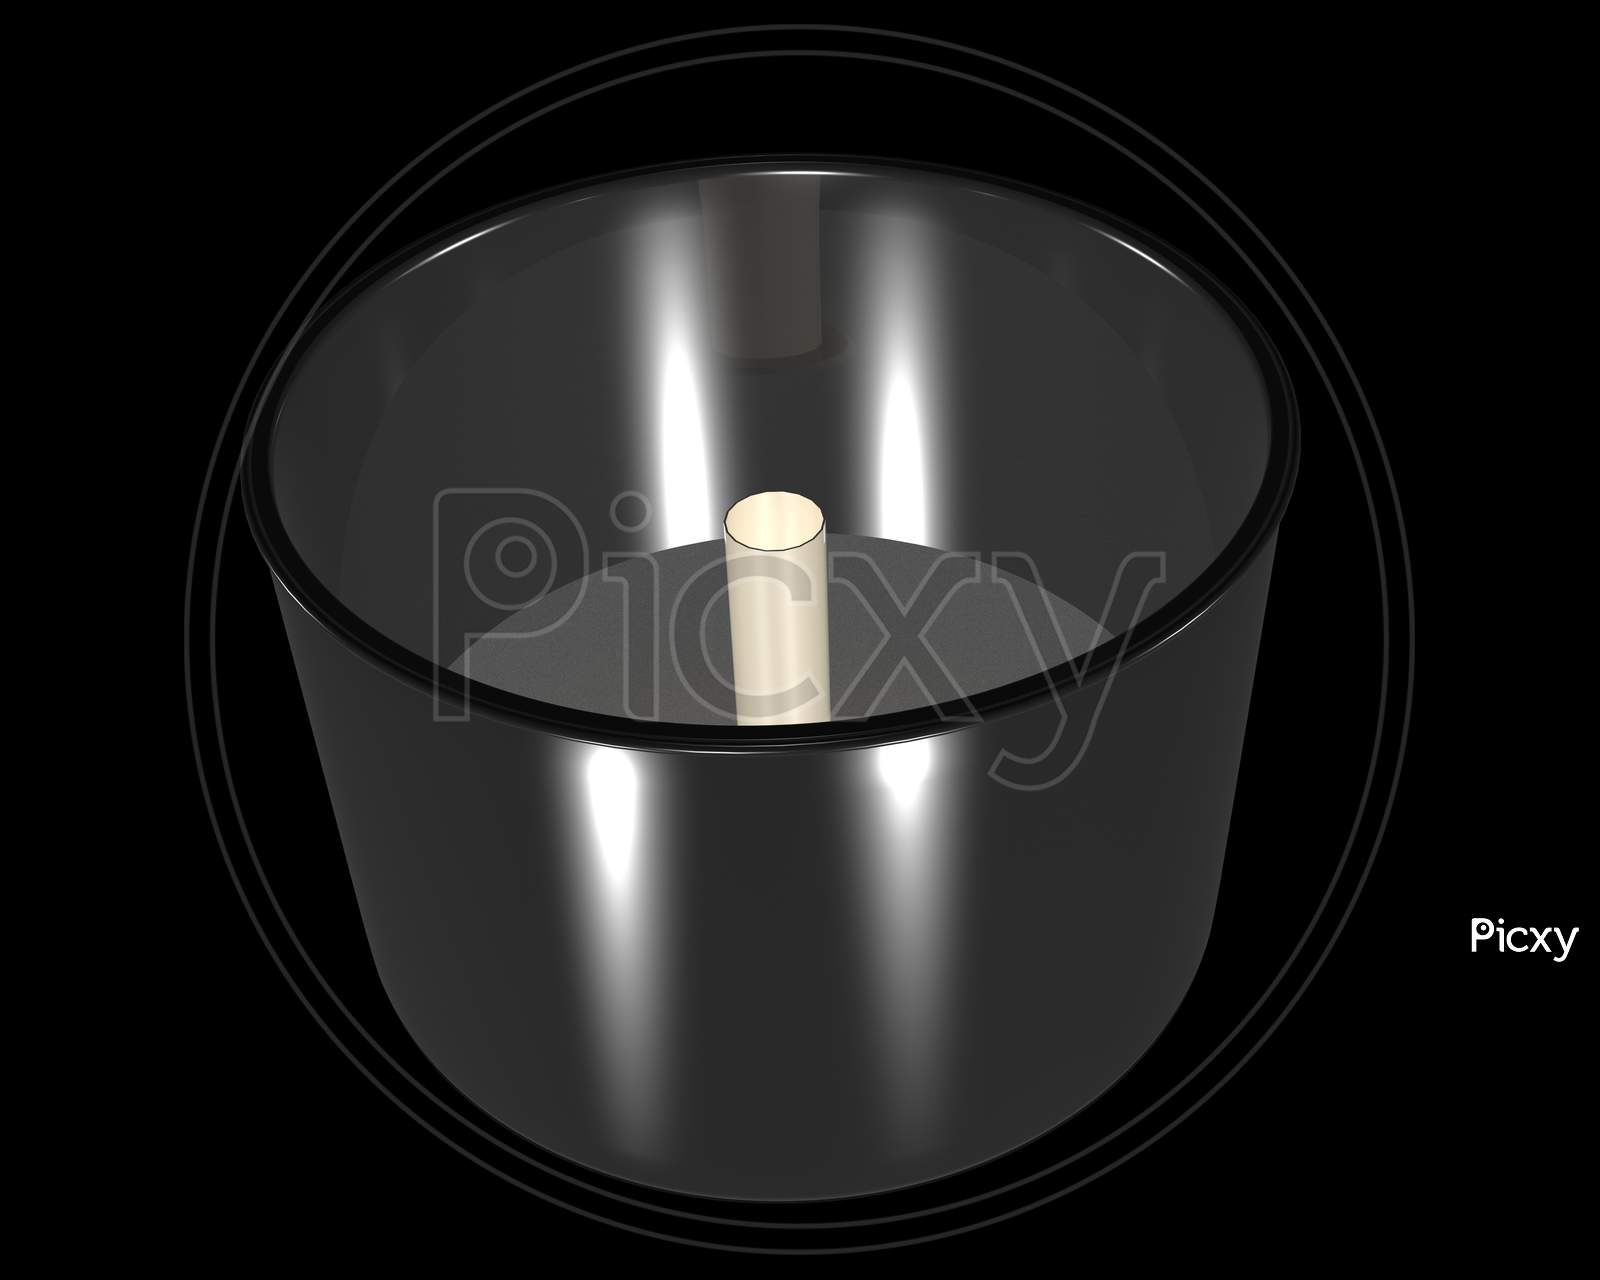 wet grinder steel container 3d illustration